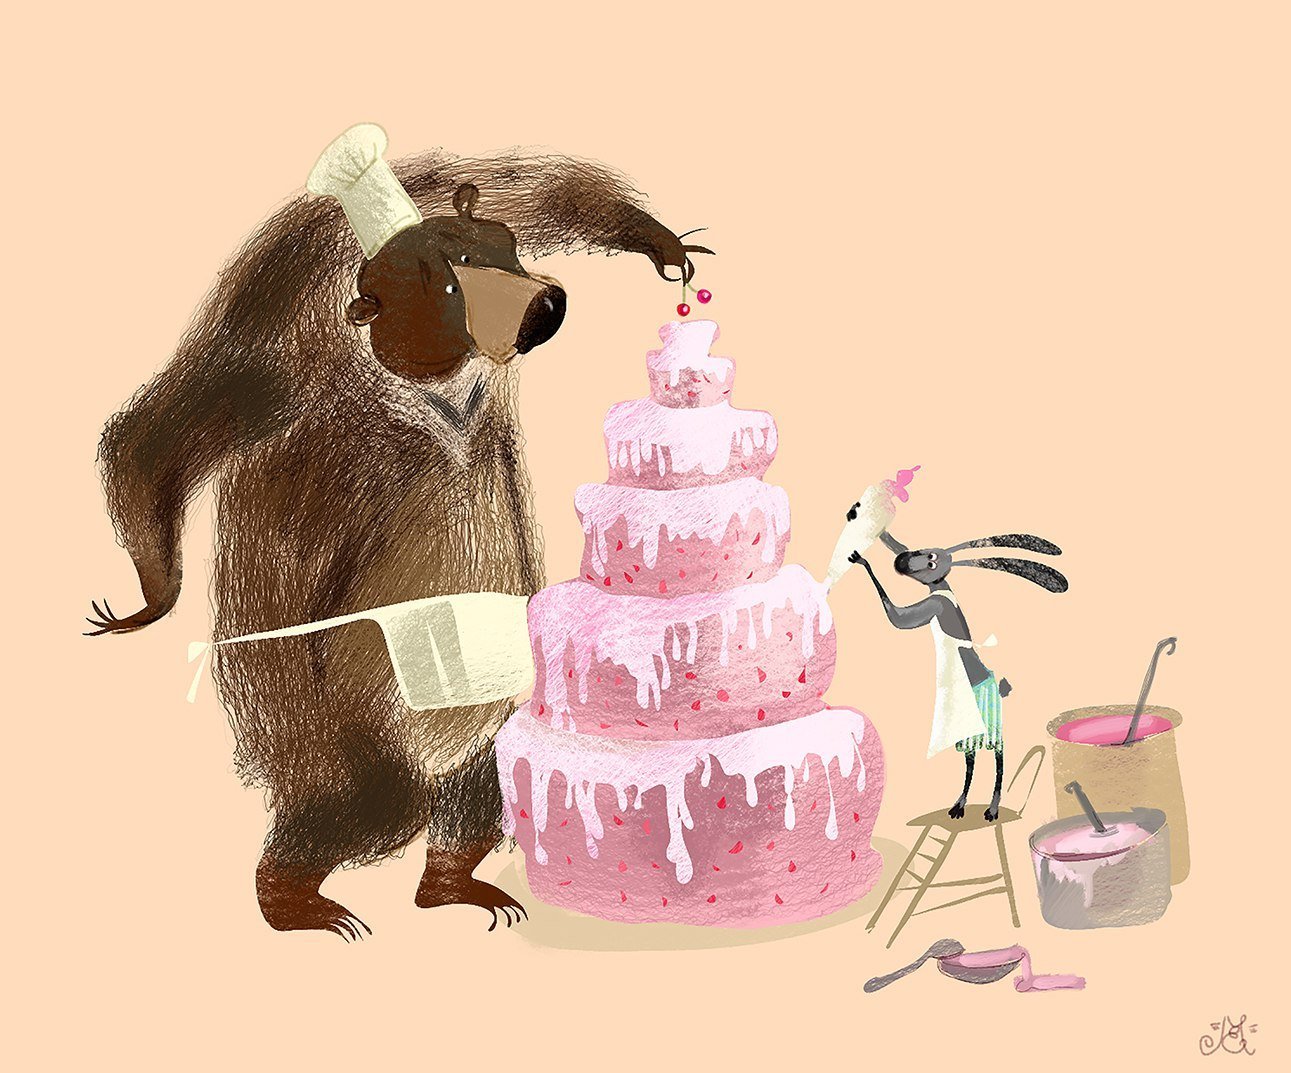 Открытка с днем рождения с медведем. С днем рождения иллюстрация. С днем рождения прикольные картинки. Картинки с днём рождения смешные. Прикольные картинки с днем РО.